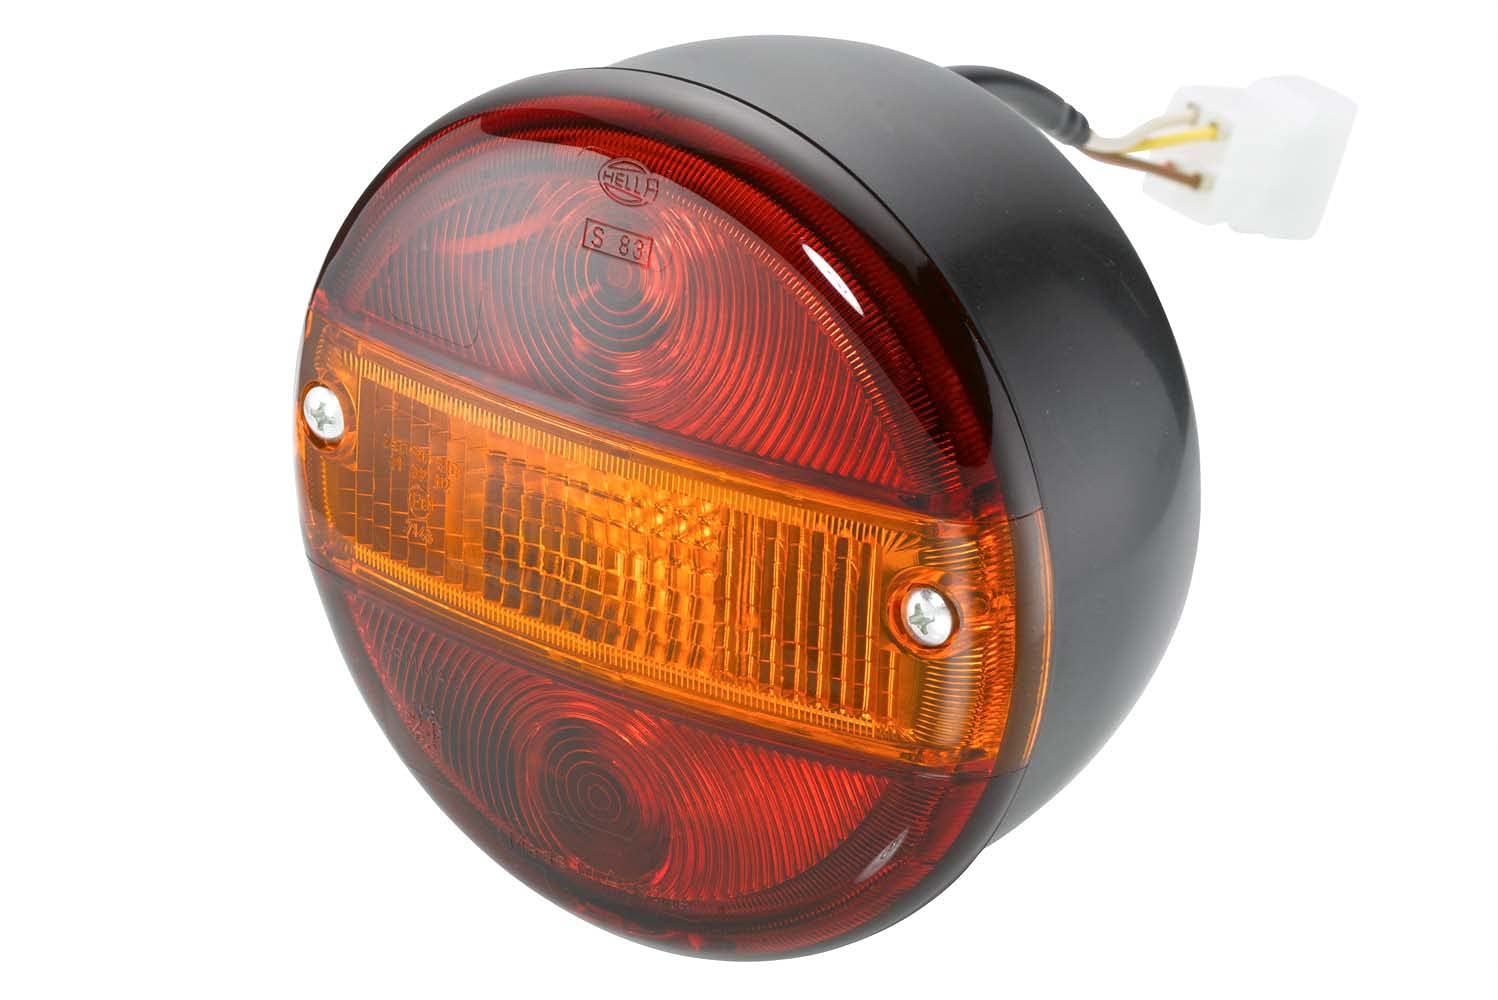 HELLA Rückleuchte - Glühlampe - Anhänger Beleuchtung - 12V - Anbau/geschraubt - ECE/ADR/GGVS/nicht SAE - Lichtscheibenfarbe: rot/gelb - Kabel: 150mm - Stecker: Flachstecker - 2SD 001 685-277 von Hella